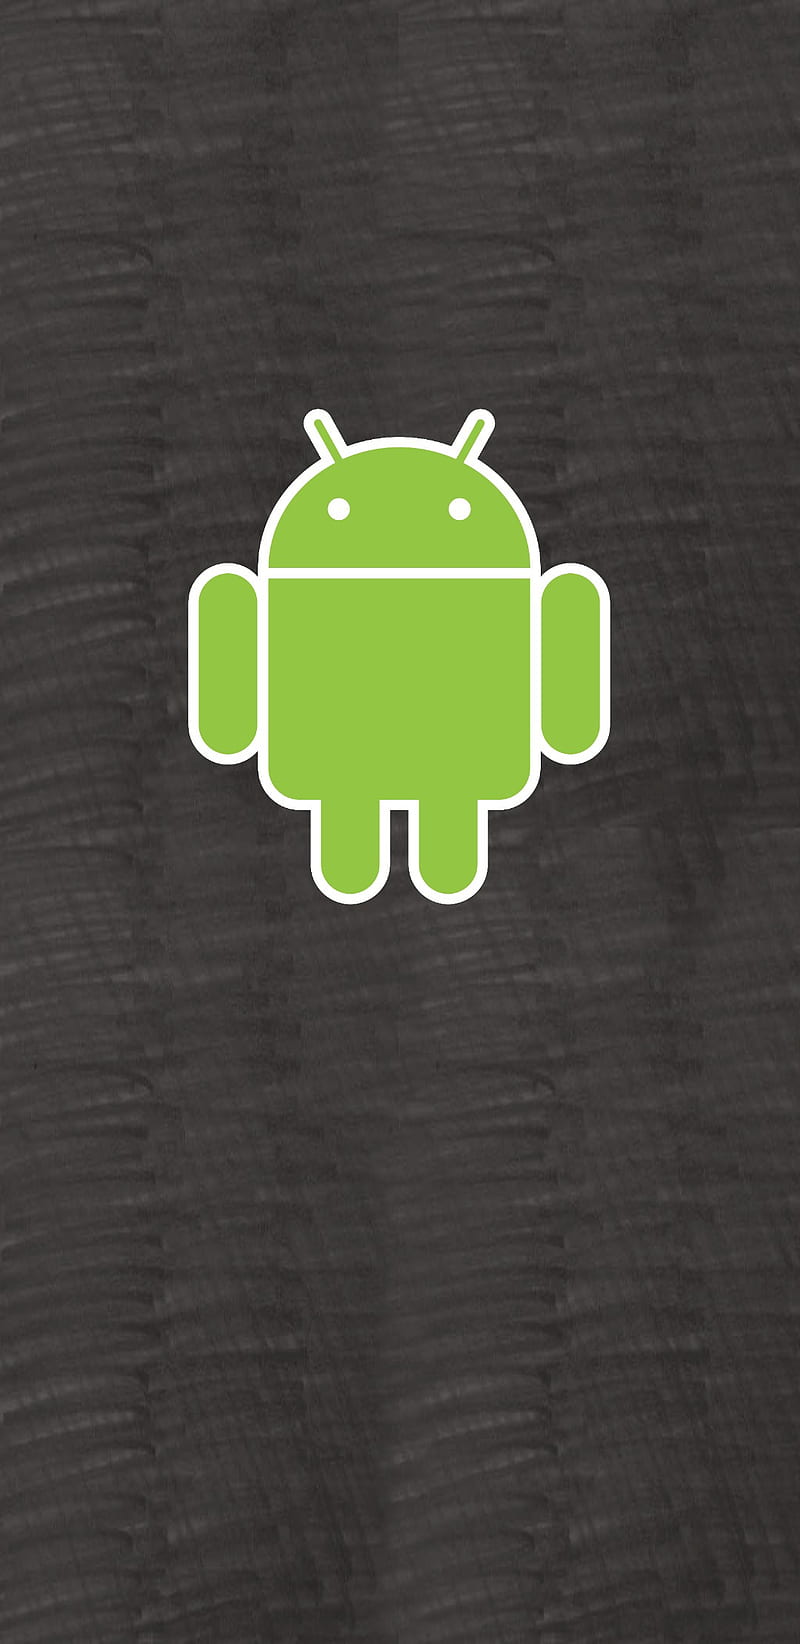 Classic Original 2, android, android retro, google, old android, the original android, HD phone wallpaper